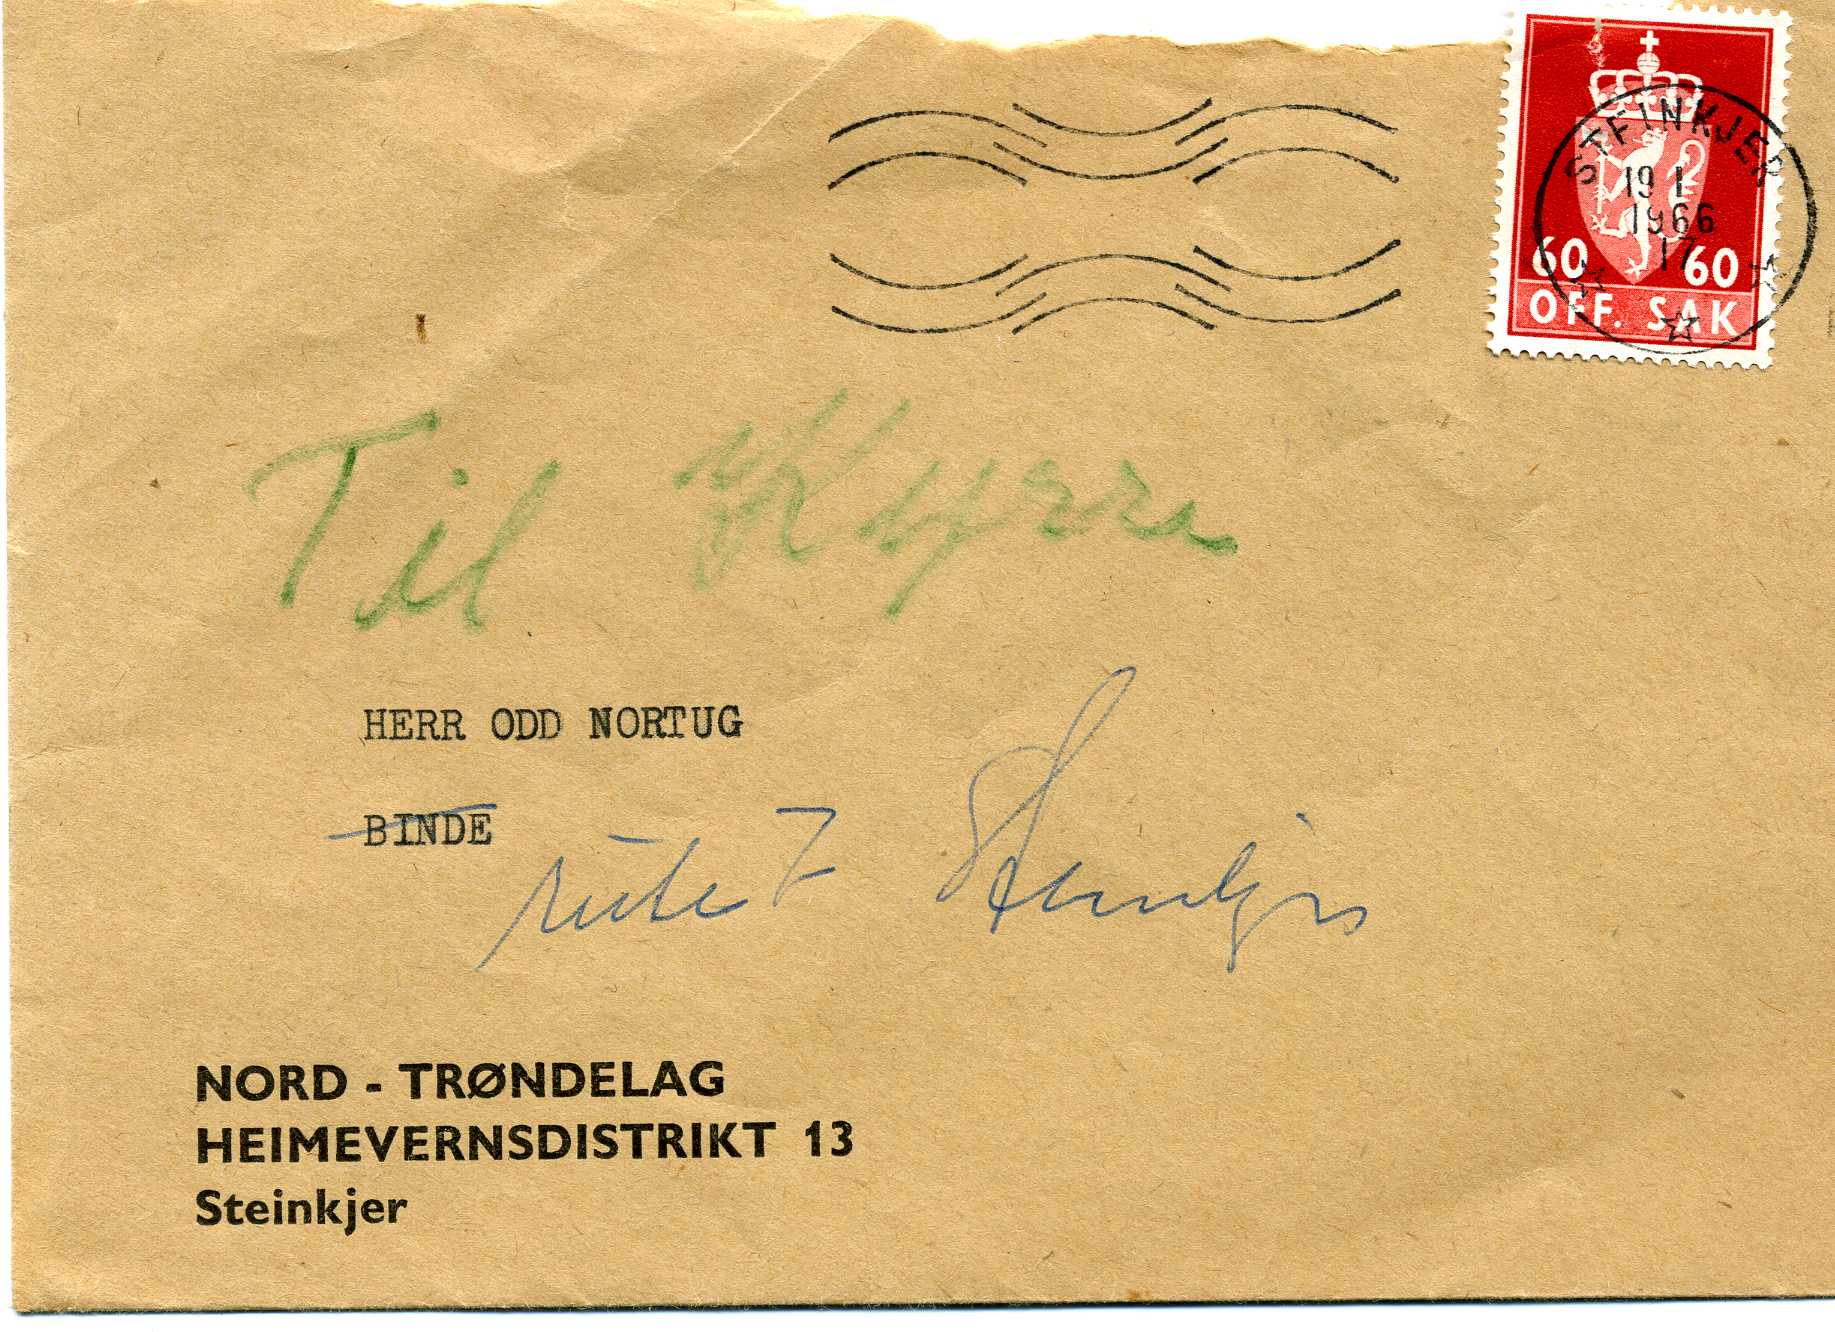 Nord-Trøndelag heimeverndistrikt 1966